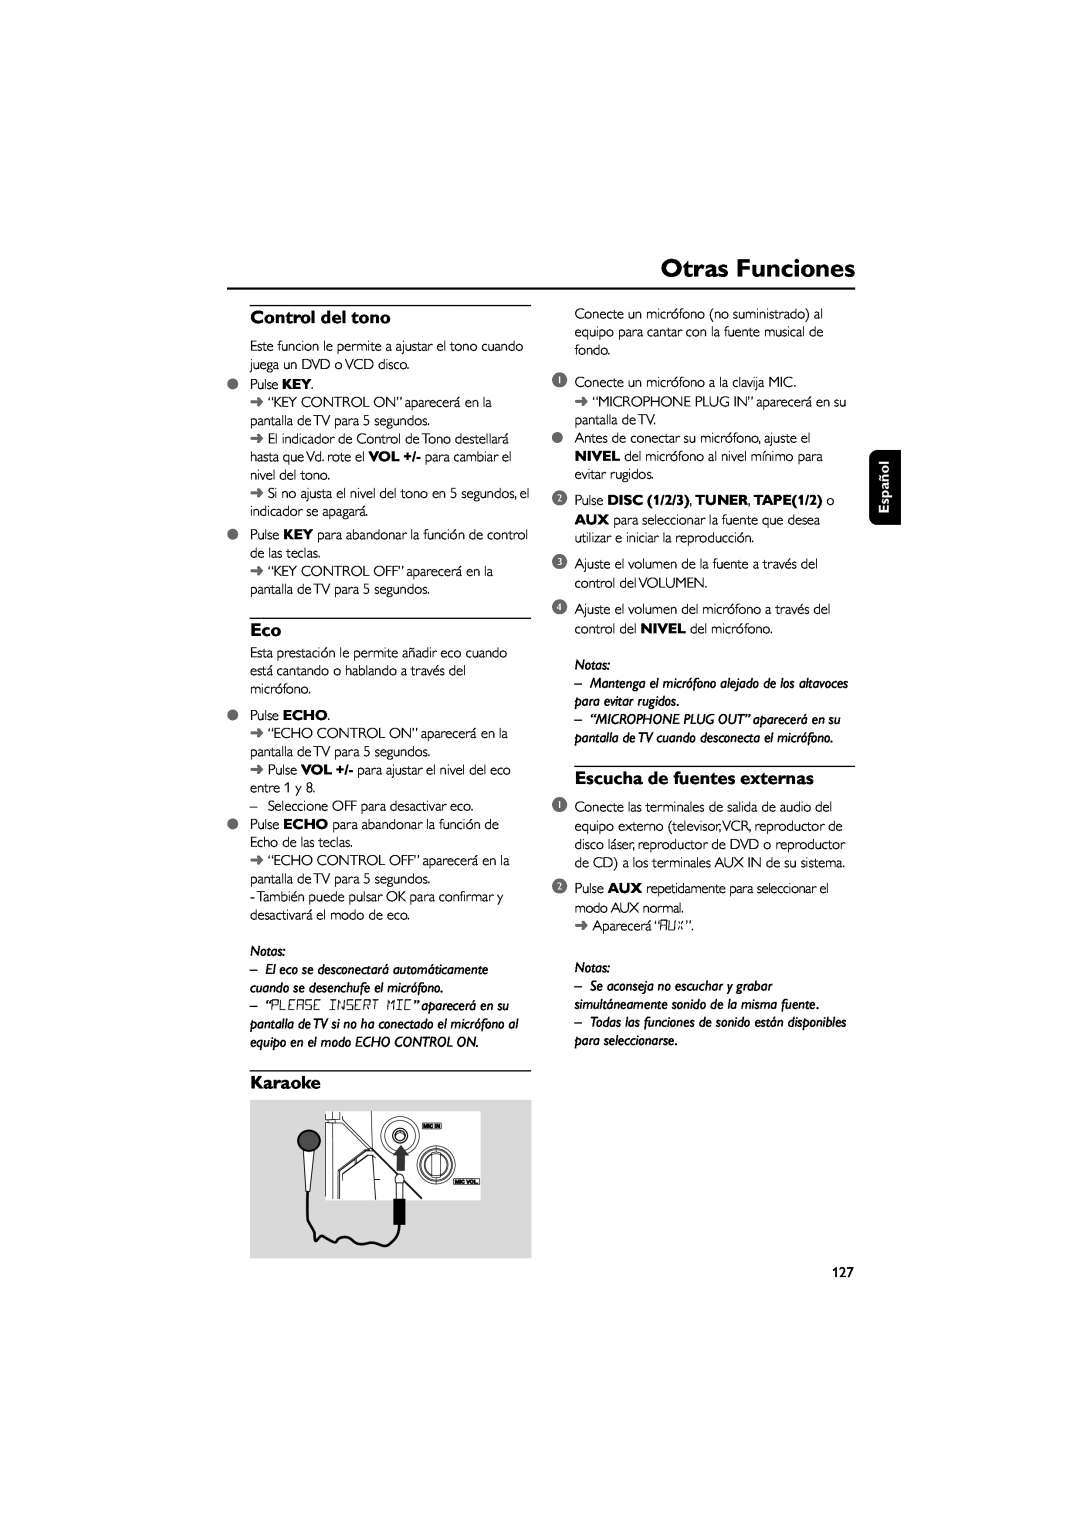 Philips FWD39 manual Control del tono, Escucha de fuentes externas, Karaoke, Otras Funciones, Notas, Español 